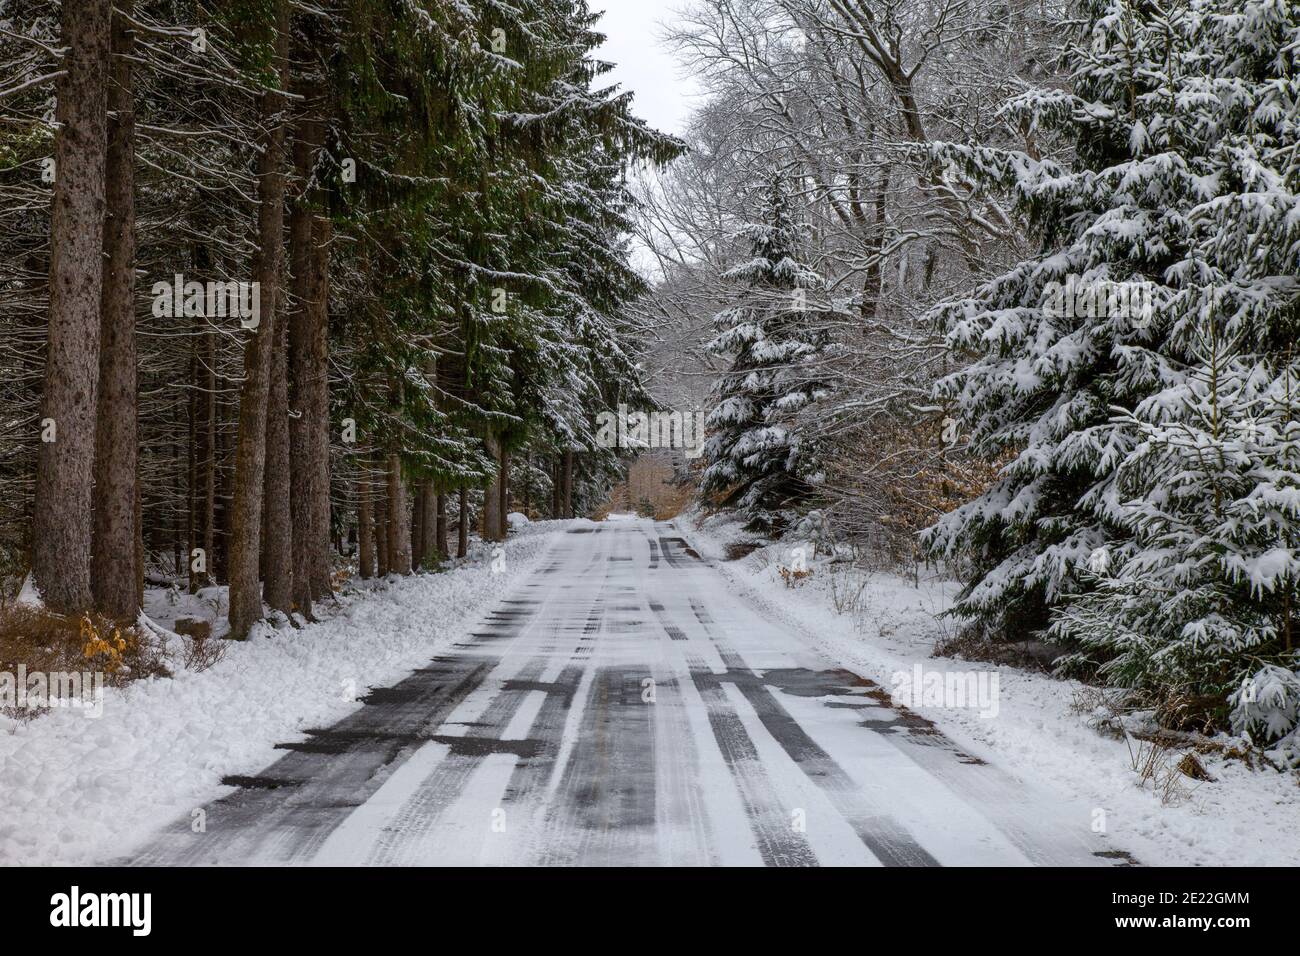 Une route enneigée dans le parc national Promise Land, Pocono Mountains, Pennsylvanie Banque D'Images